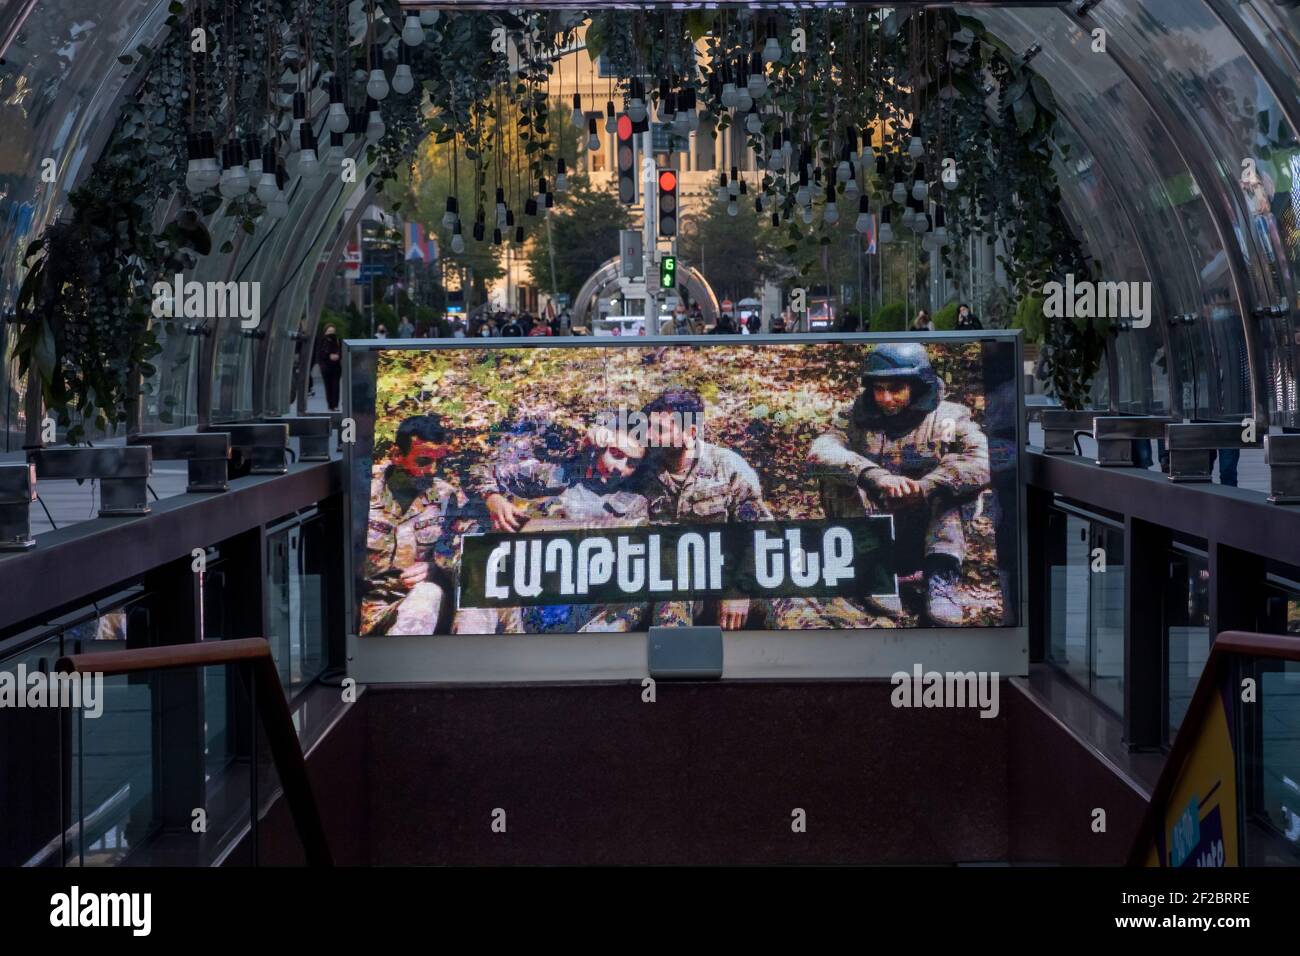 JEREWAN, ARMENIEN - NOVEMBER 10: Ein großer Bildschirm zeigt Mitglieder der Verteidigungsarmee von Arzakh während des militärischen Konflikts zwischen armenischen und aserbaidschanischen Truppen an der Nordstraße in der Innenstadt von Jerewan, der Hauptstadt Armeniens, am 10. November 2020. Die Kämpfe zwischen Armenien und Aserbaidschan um Berg-Karabach, auch bekannt als die Republik Arzakh, brachen Ende September in einen sechswöchigen Krieg aus, in dem sich beide Länder gegenseitig der Provokation beschuldigten, die Tausende Tote hinterließ. Stockfoto